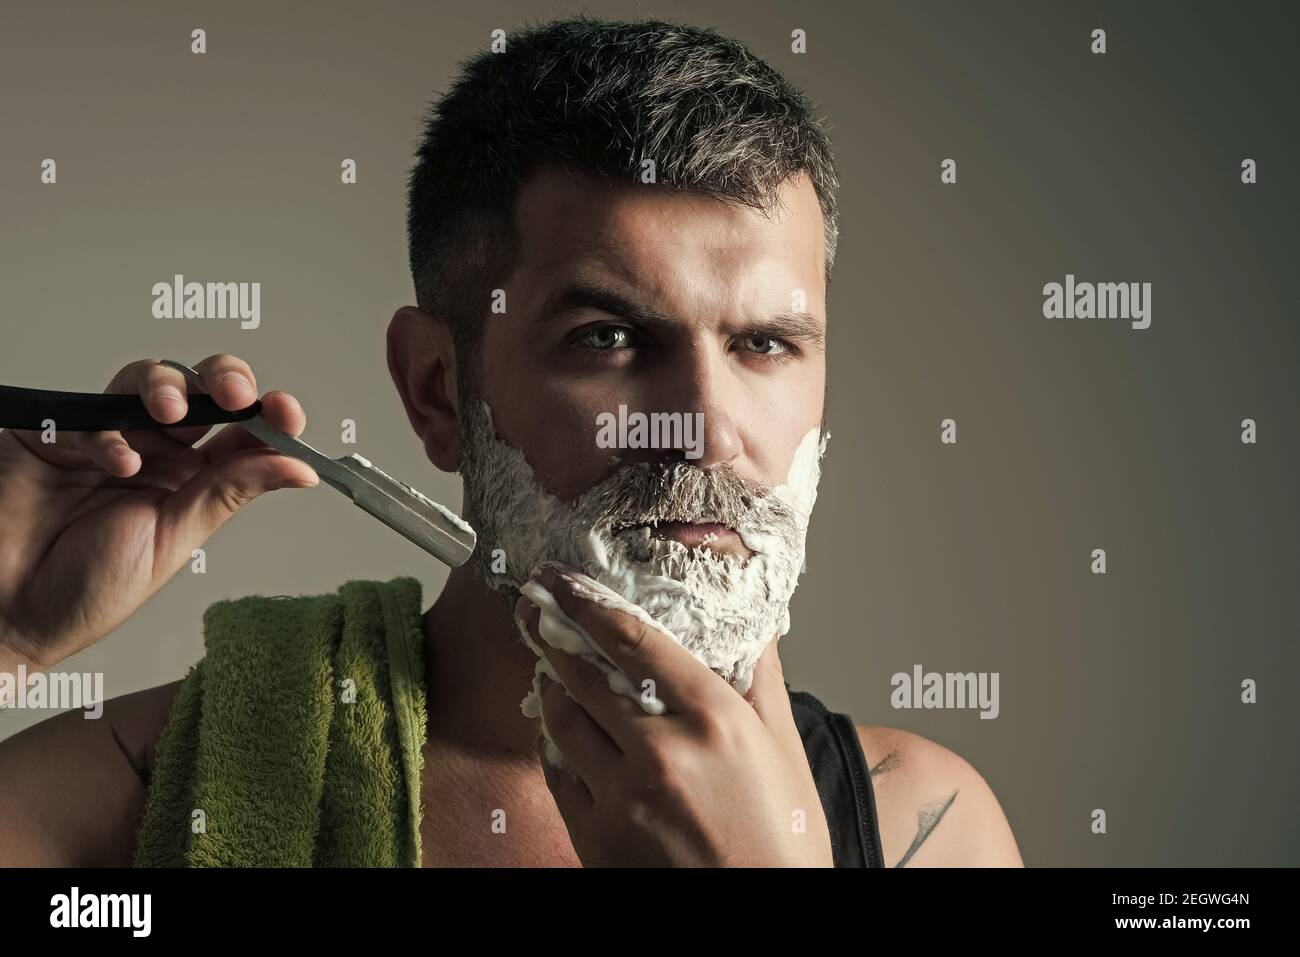 Hipster dans un salon de coiffure. L'homme a coupé la barbe et la moustache  avec un rasoir et une brosse à rasage. Coupe de cheveux d'homme barbu.  Salon de coiffure. Mode et